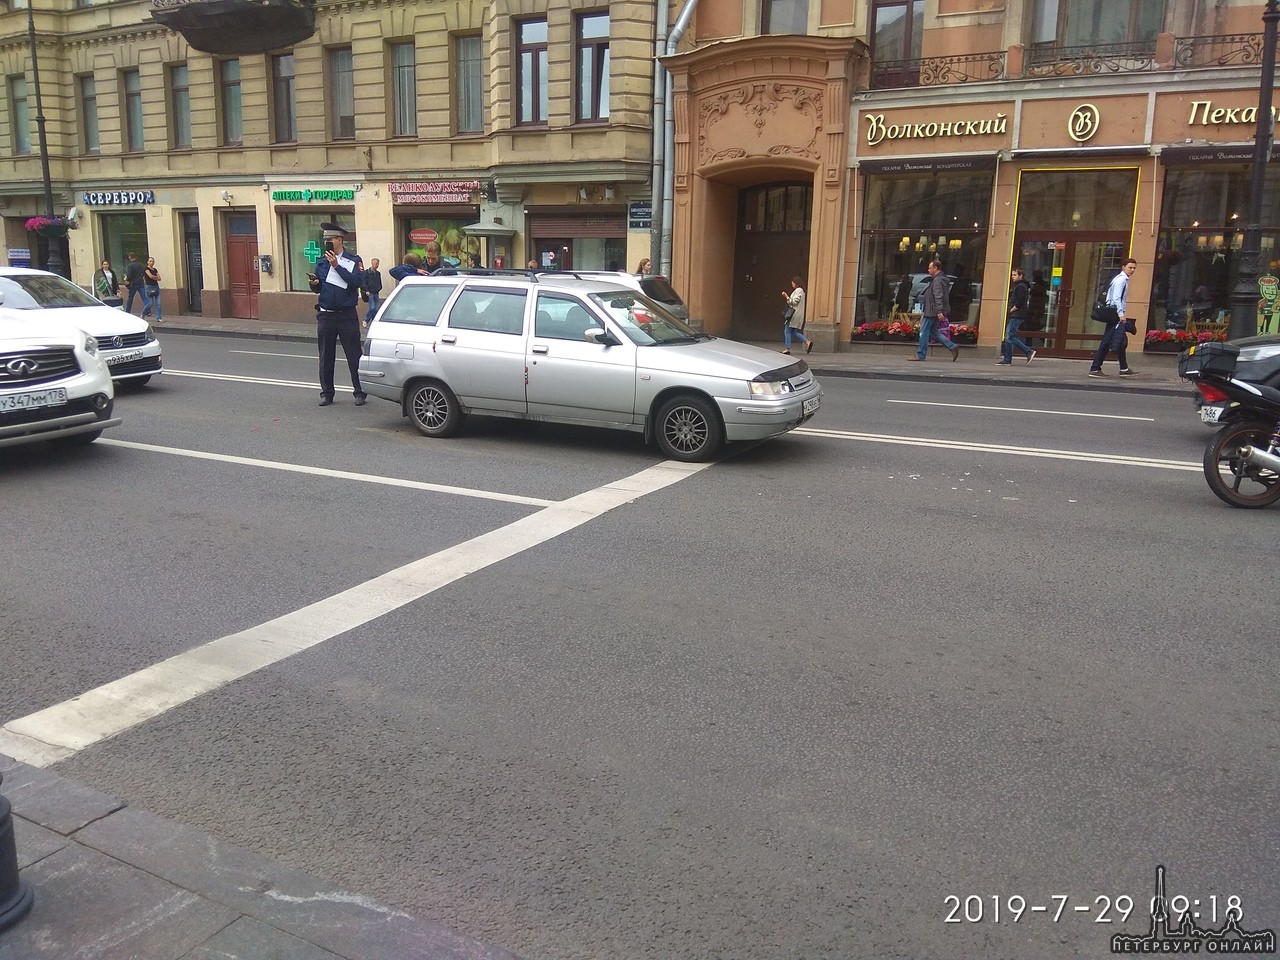 Летчик-таксист на Каменноостровском возле DNS решил перепрыгнуть через Ладу и мотоцикл на красный, н...